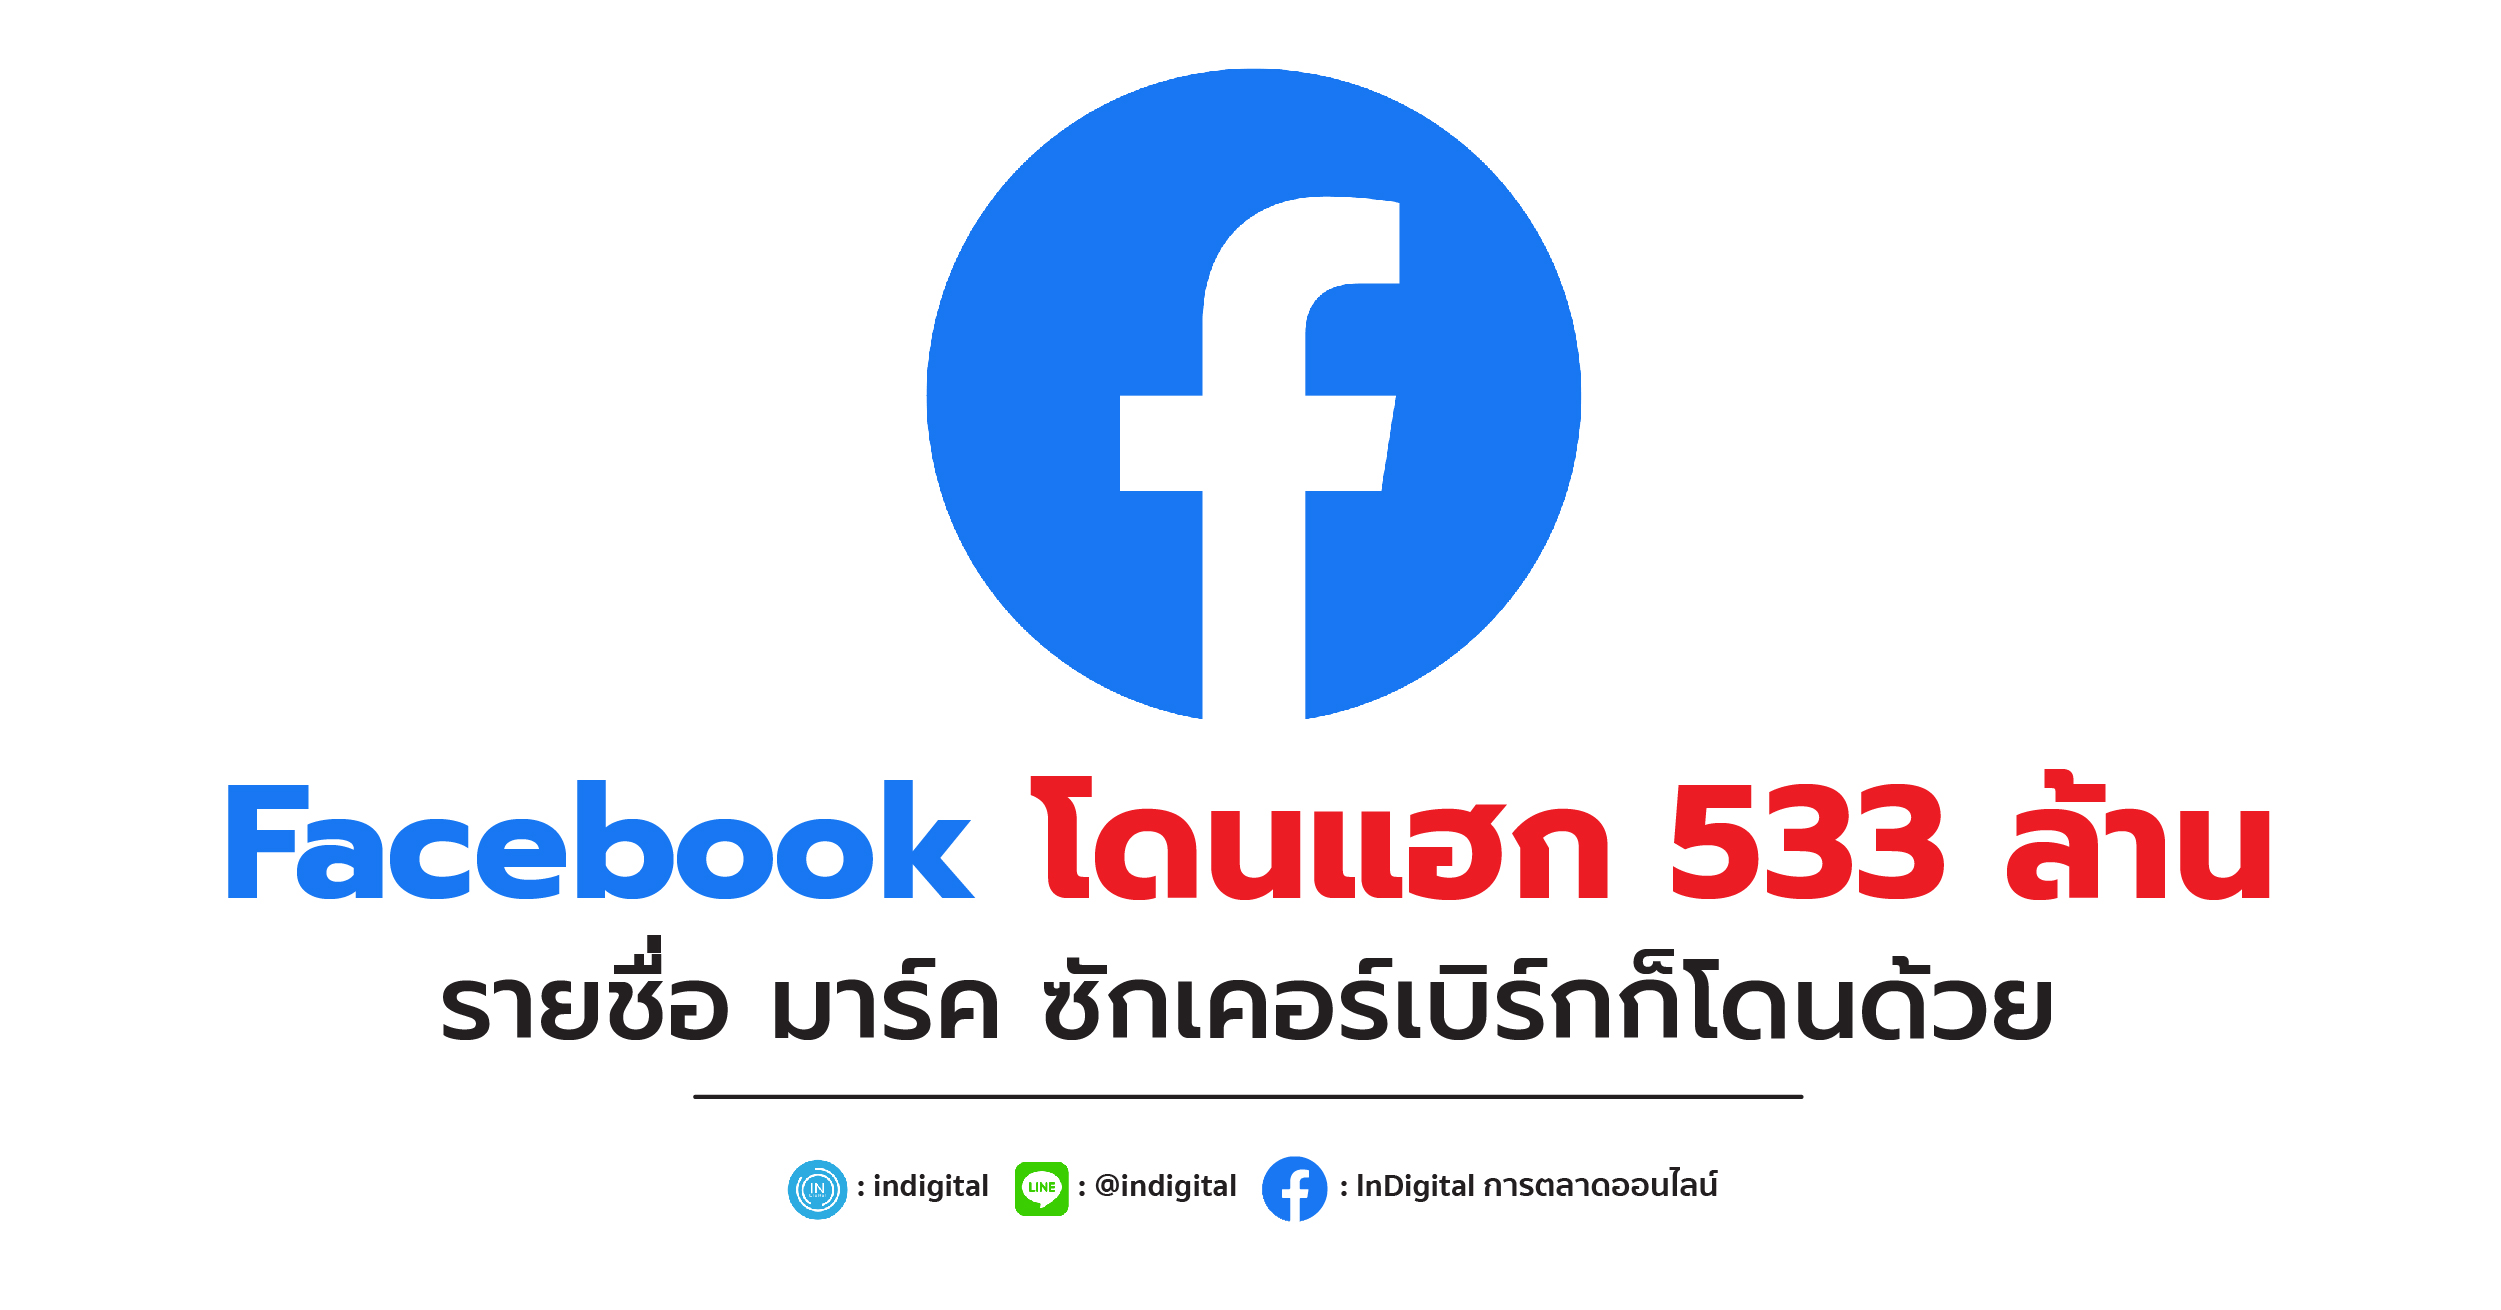 Facebook โดนแฮก 533 ล้านรายชื่อ มาร์ค ซักเคอร์เบิร์กก็โดนด้วย